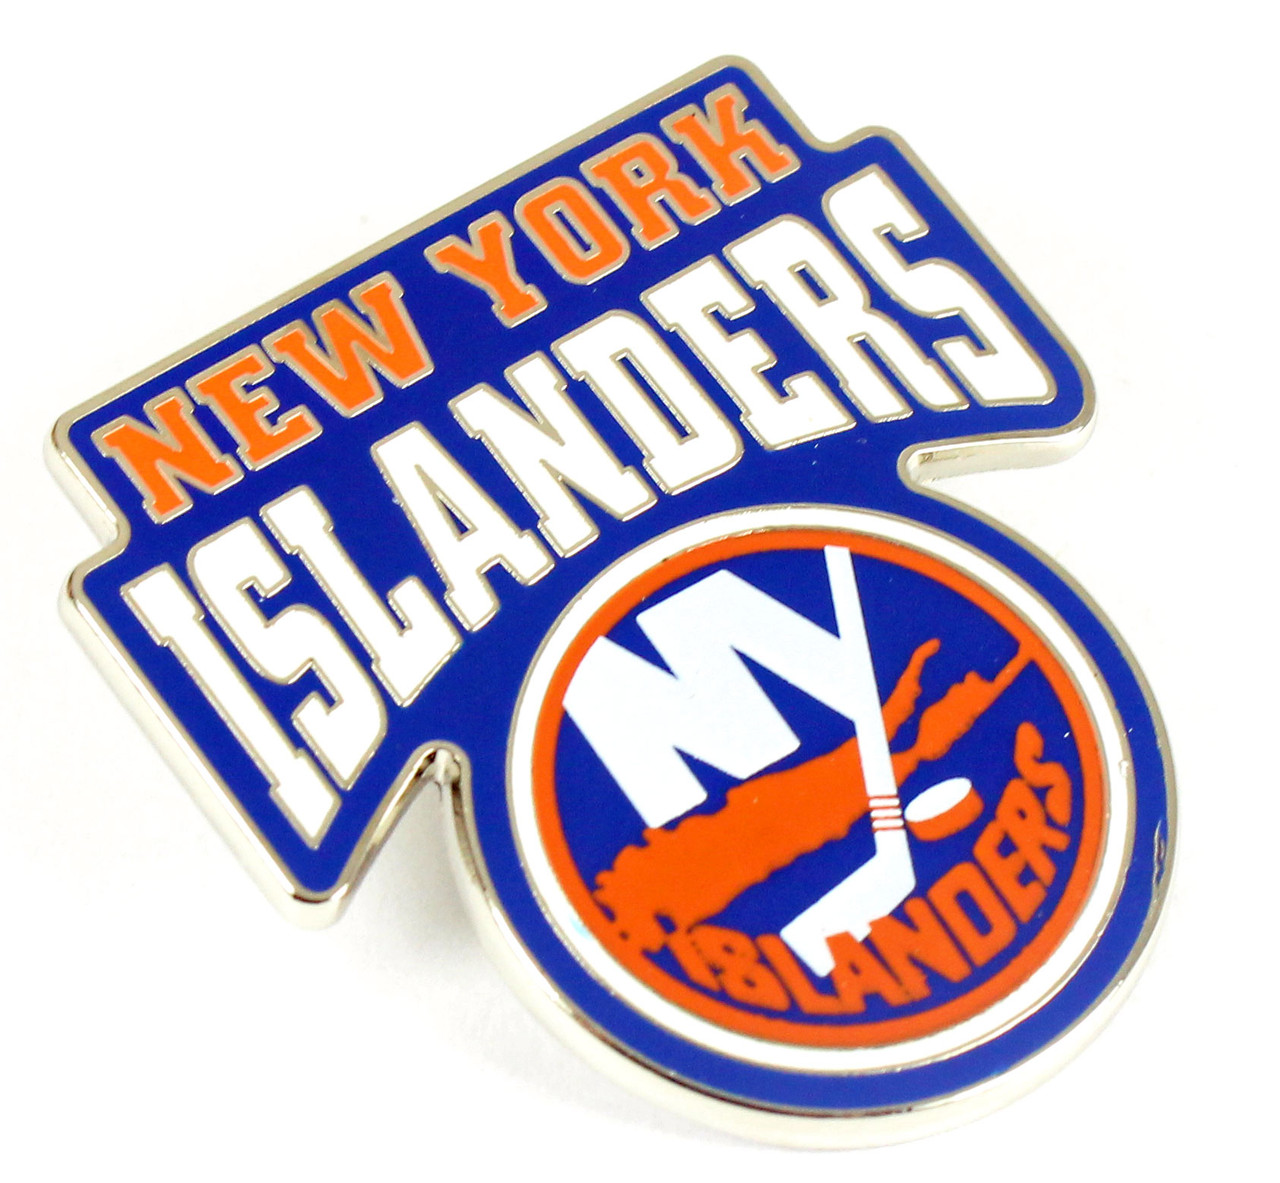 Vintage Hockey - New York Islanders (Orange Islanders Wordmark